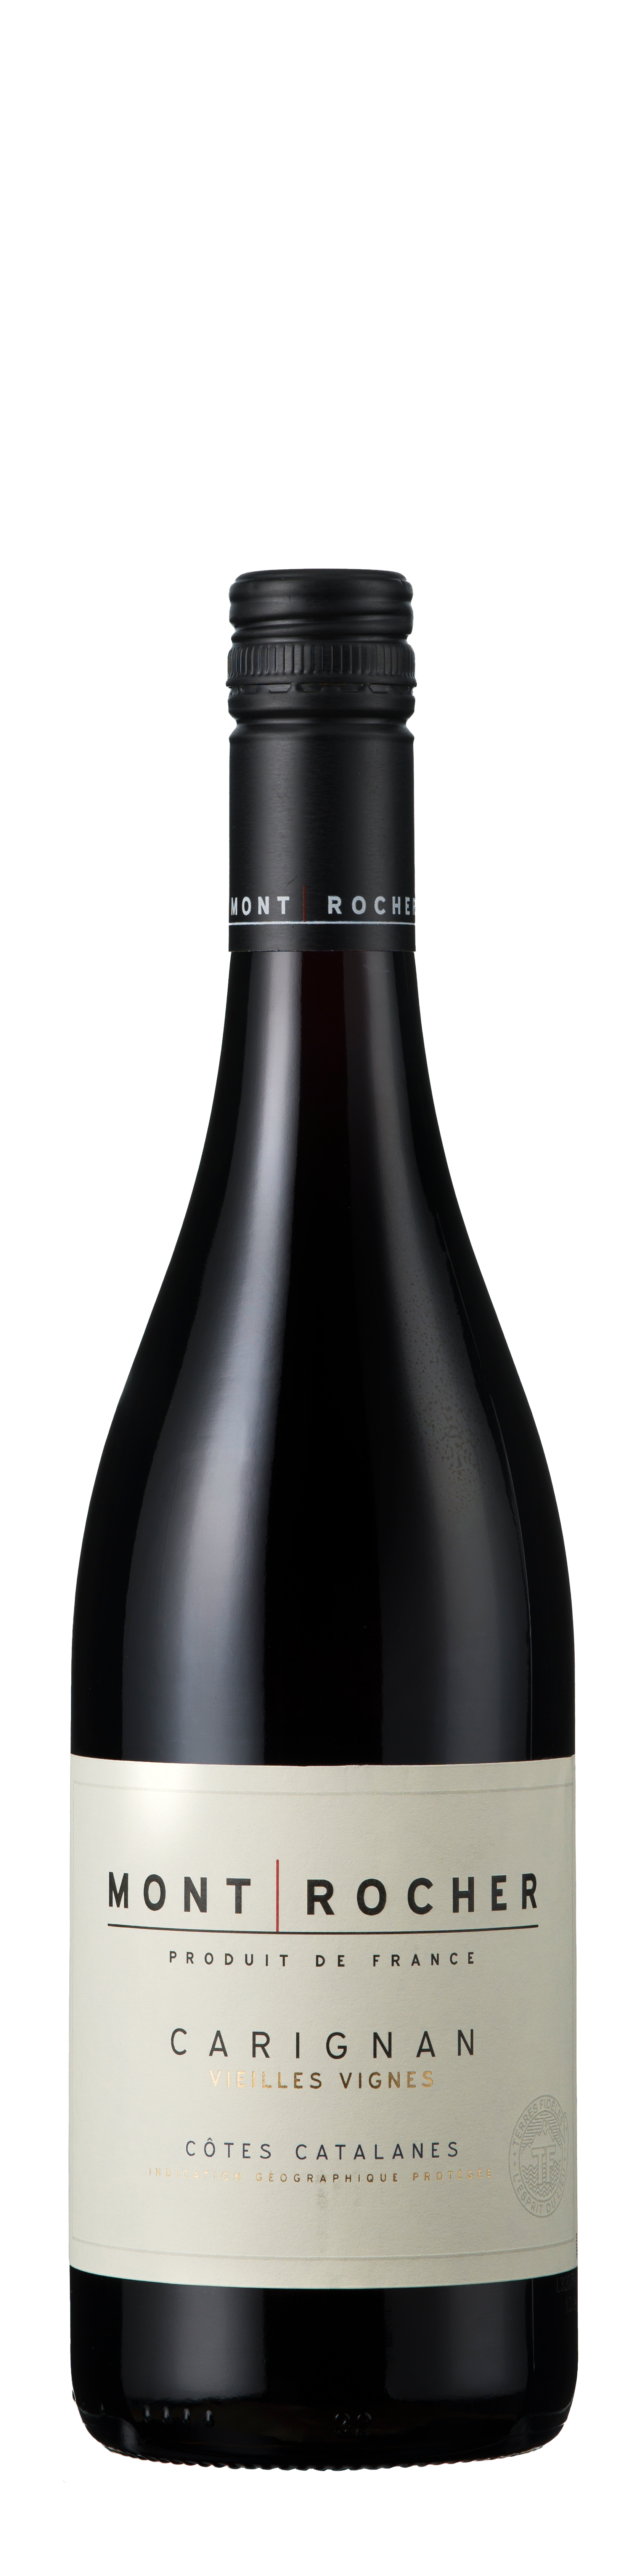 Bottle shot - Mont Rocher, Carignan, Vieilles Vignes, IGP Côtes Catalanes, France